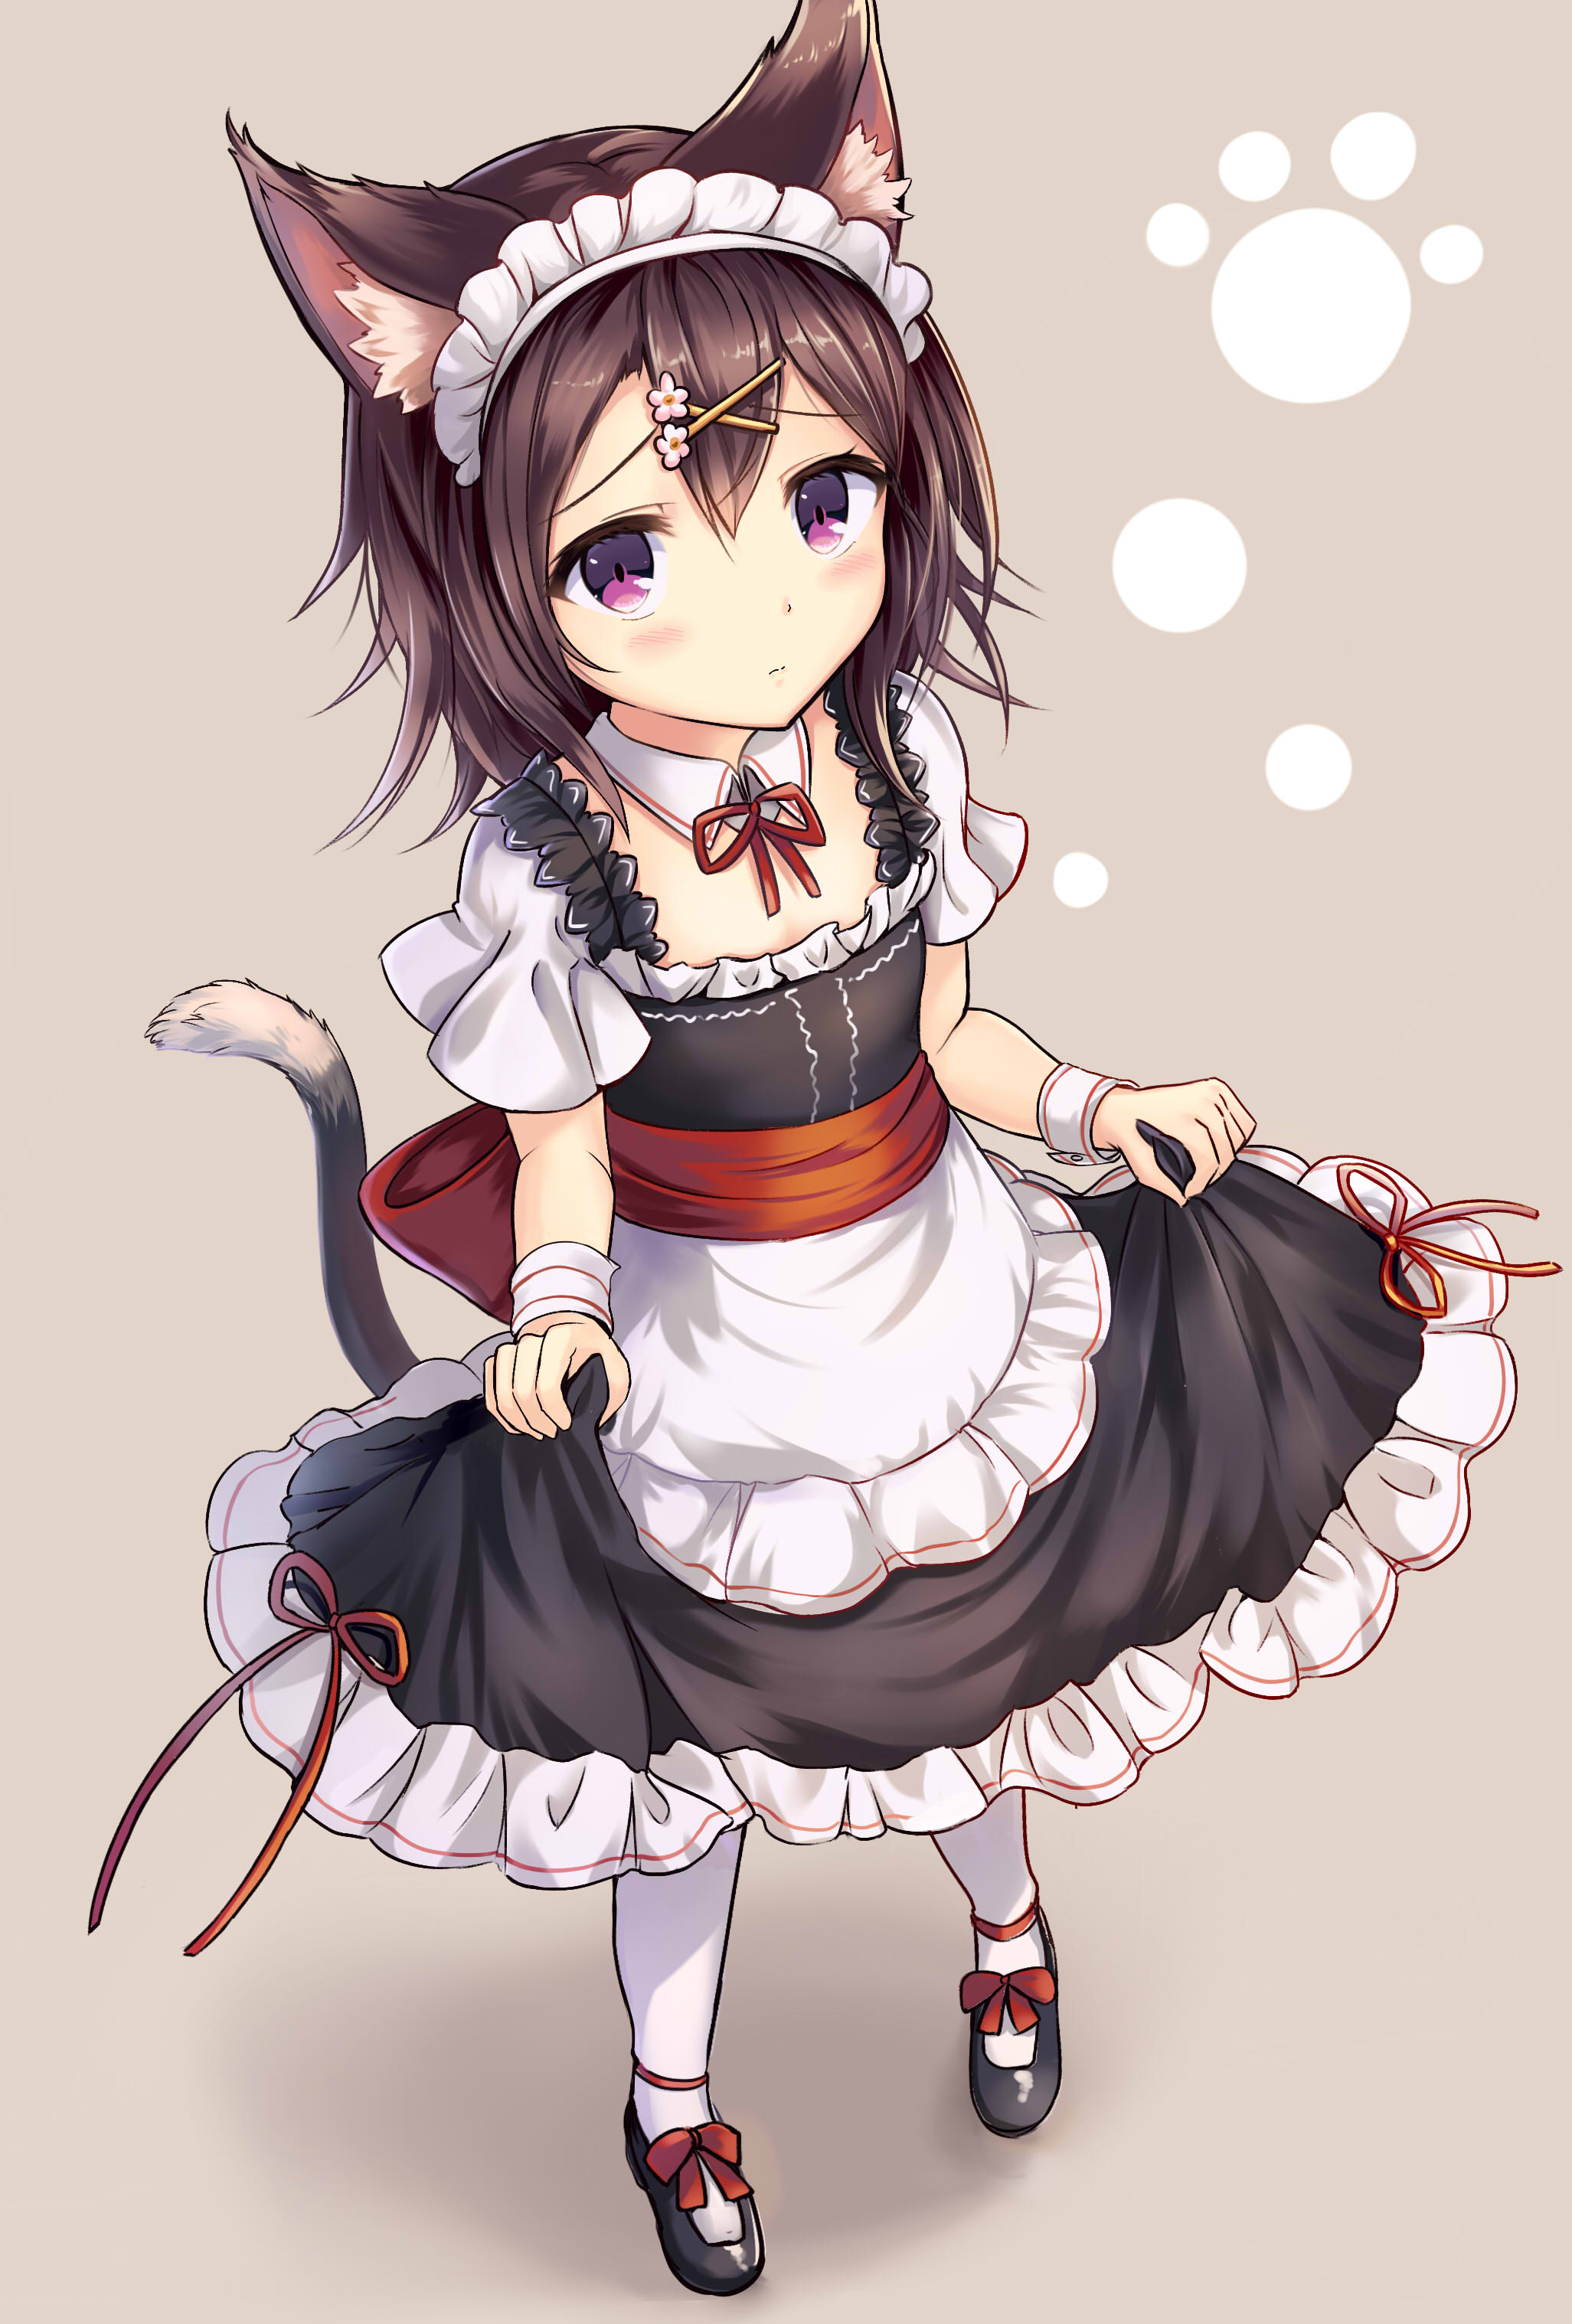 Catgirl maid [Original] : r/awwnime